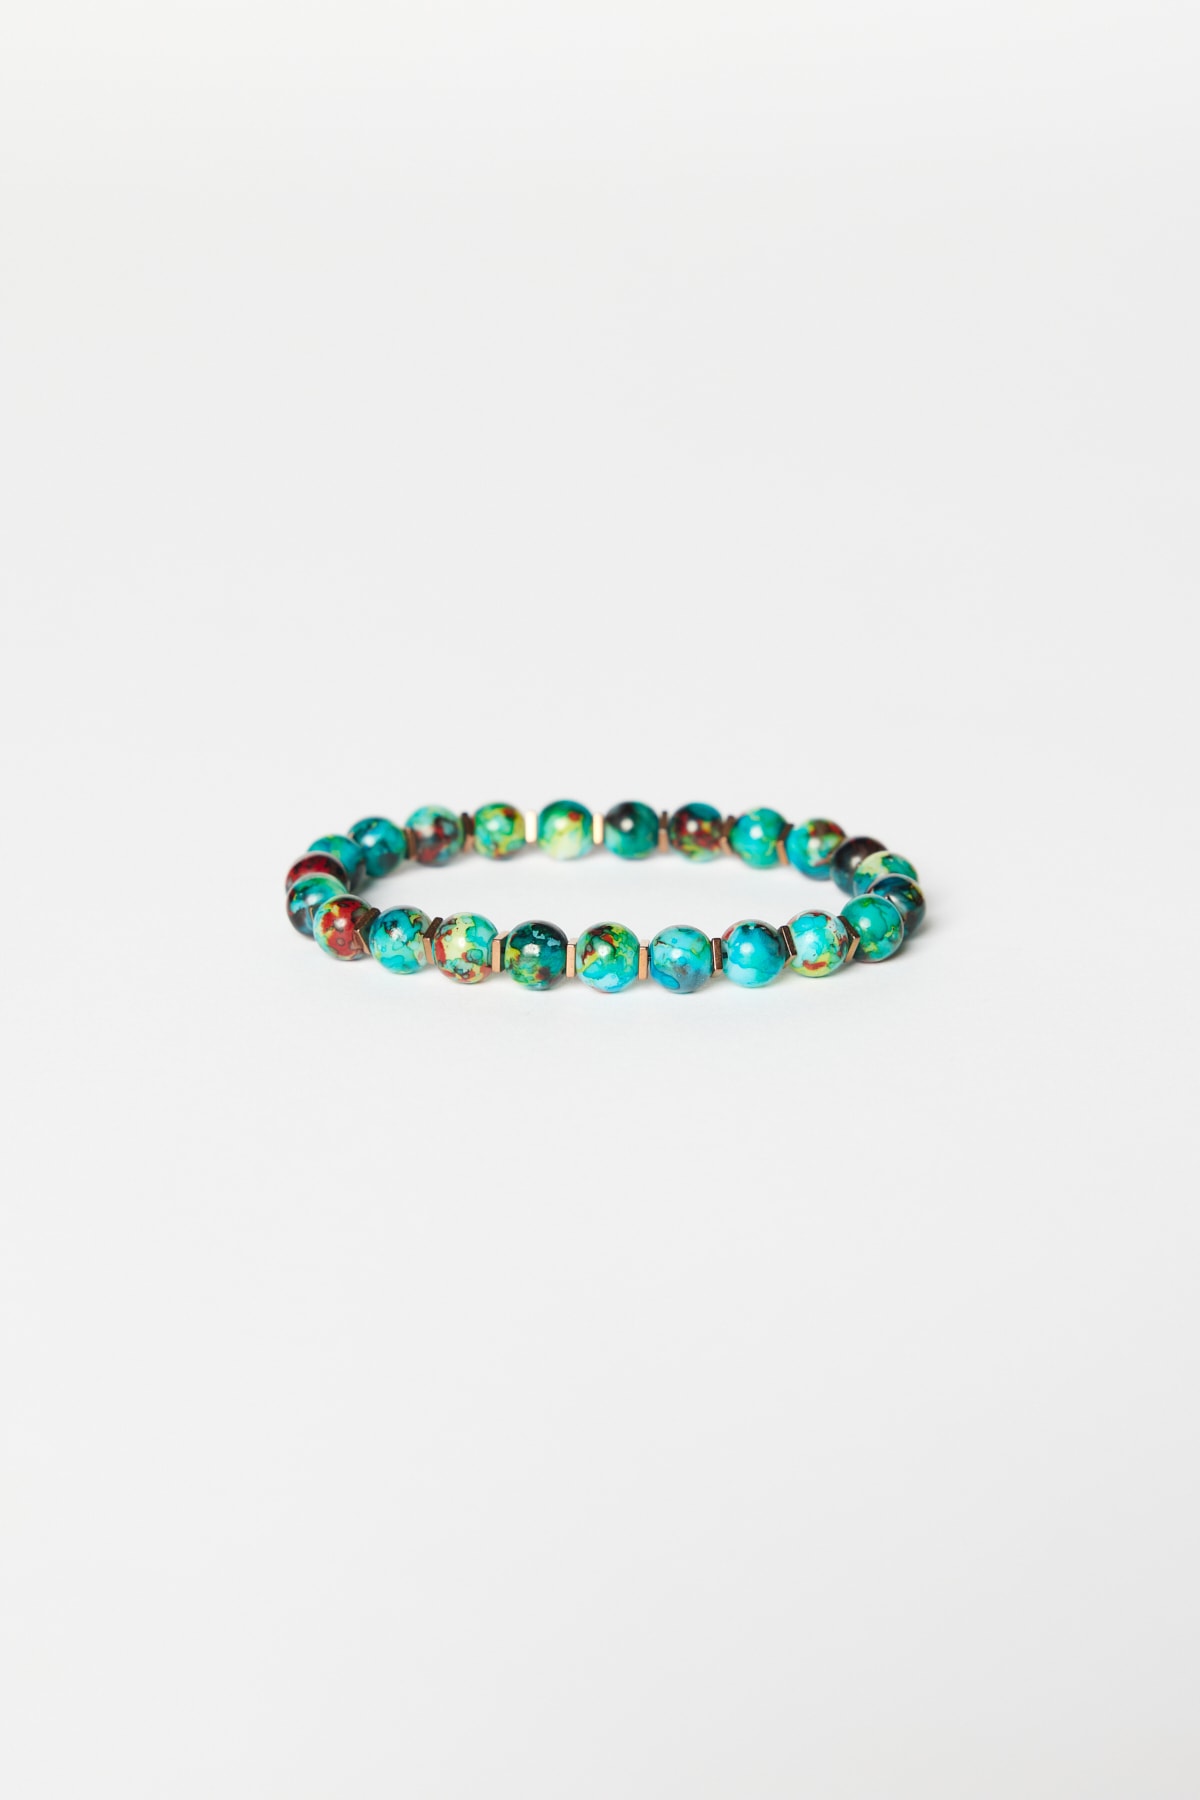 ALTINYILDIZ CLASSICS Men's Turquoise Glass Bead Bracelet